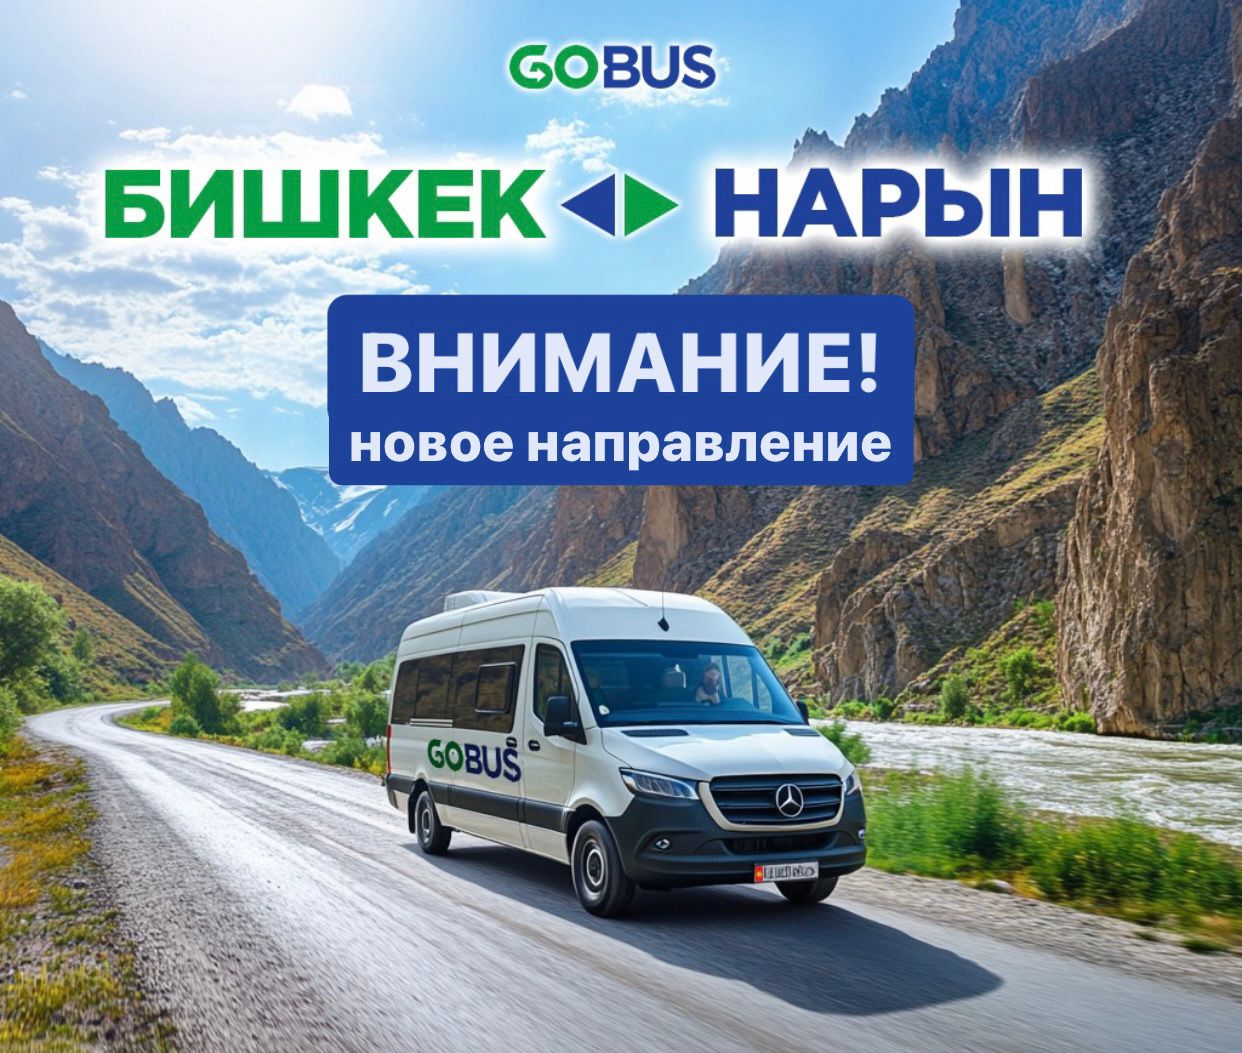 Автобус GoBus начнет рейсы в Нарын